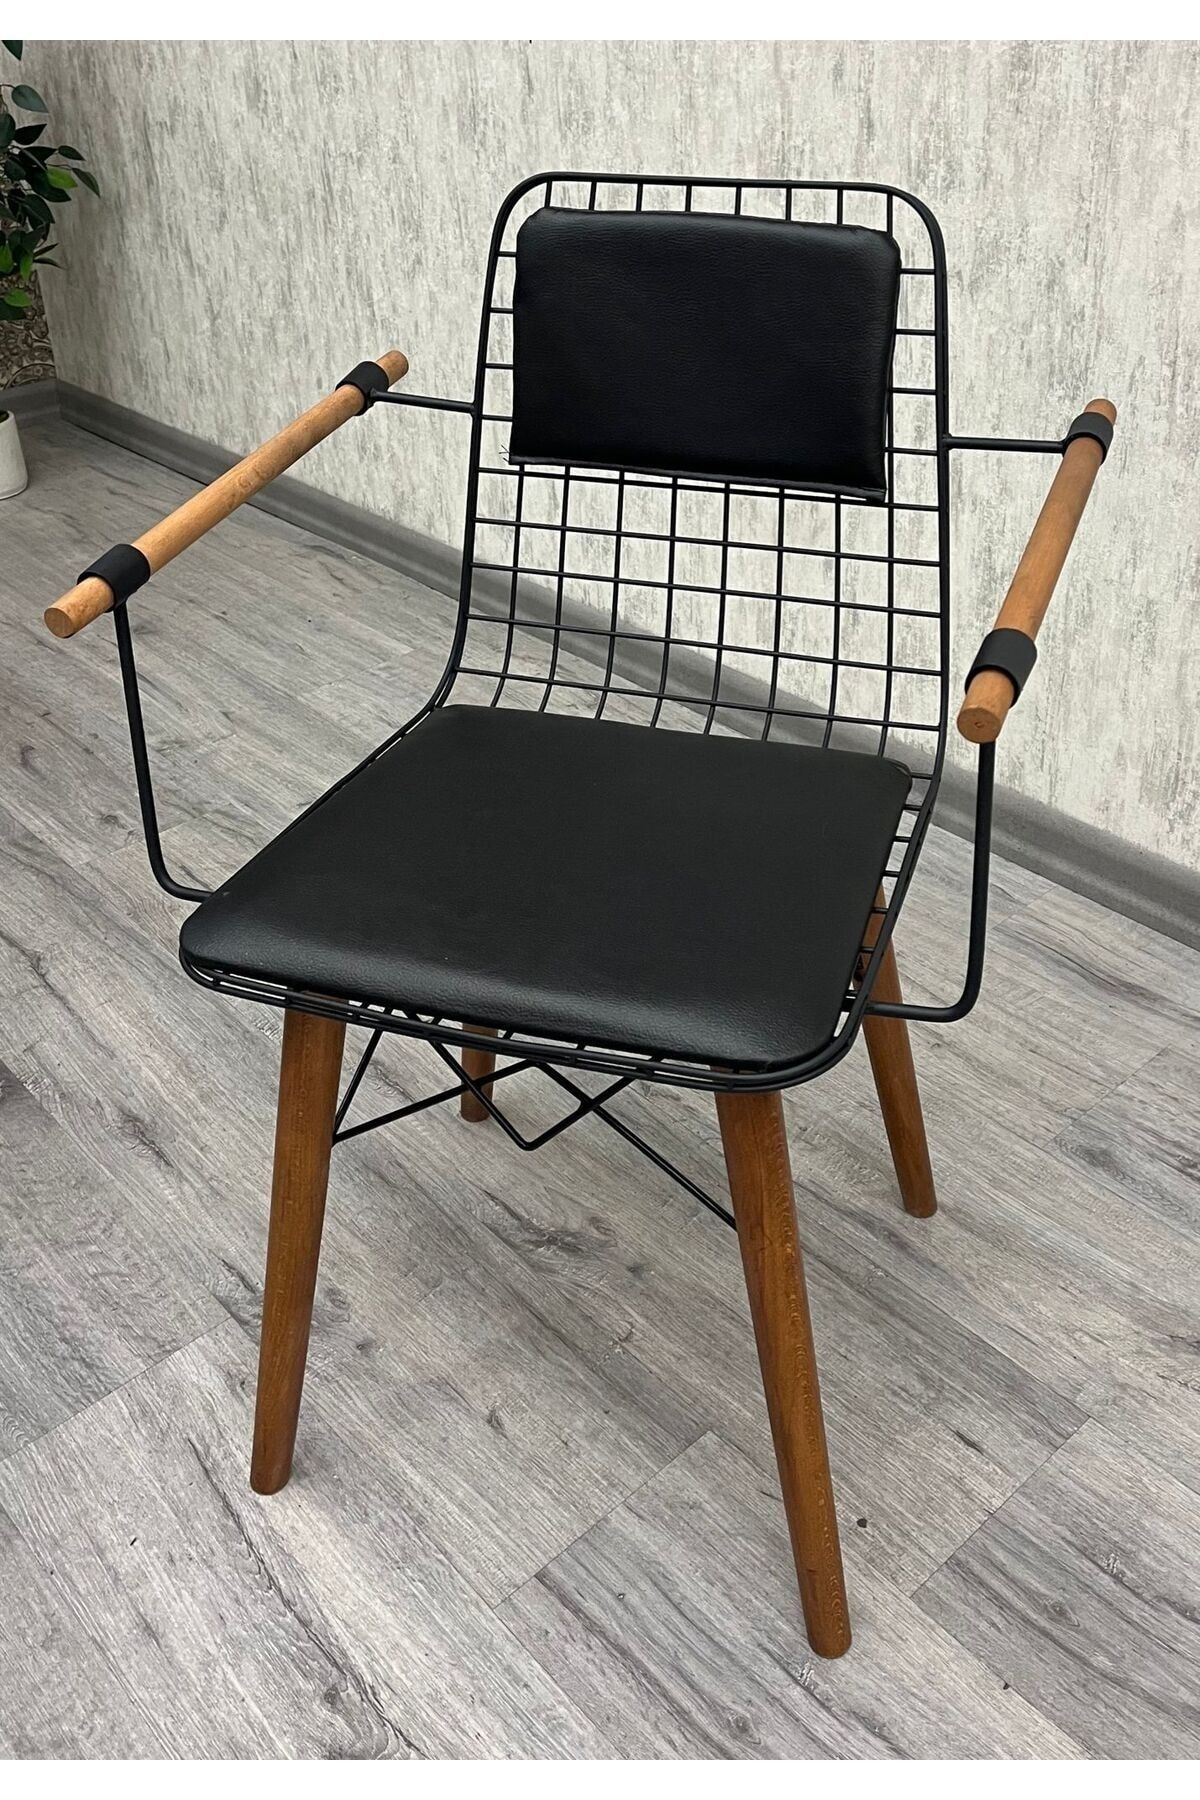 BY ORHAN GÜZEL Mutfak Sandalyesi , Balkon Sandalyesi , Salon Sandalyesi Su Geçirmez Sırt Minderli Tel Sandalye